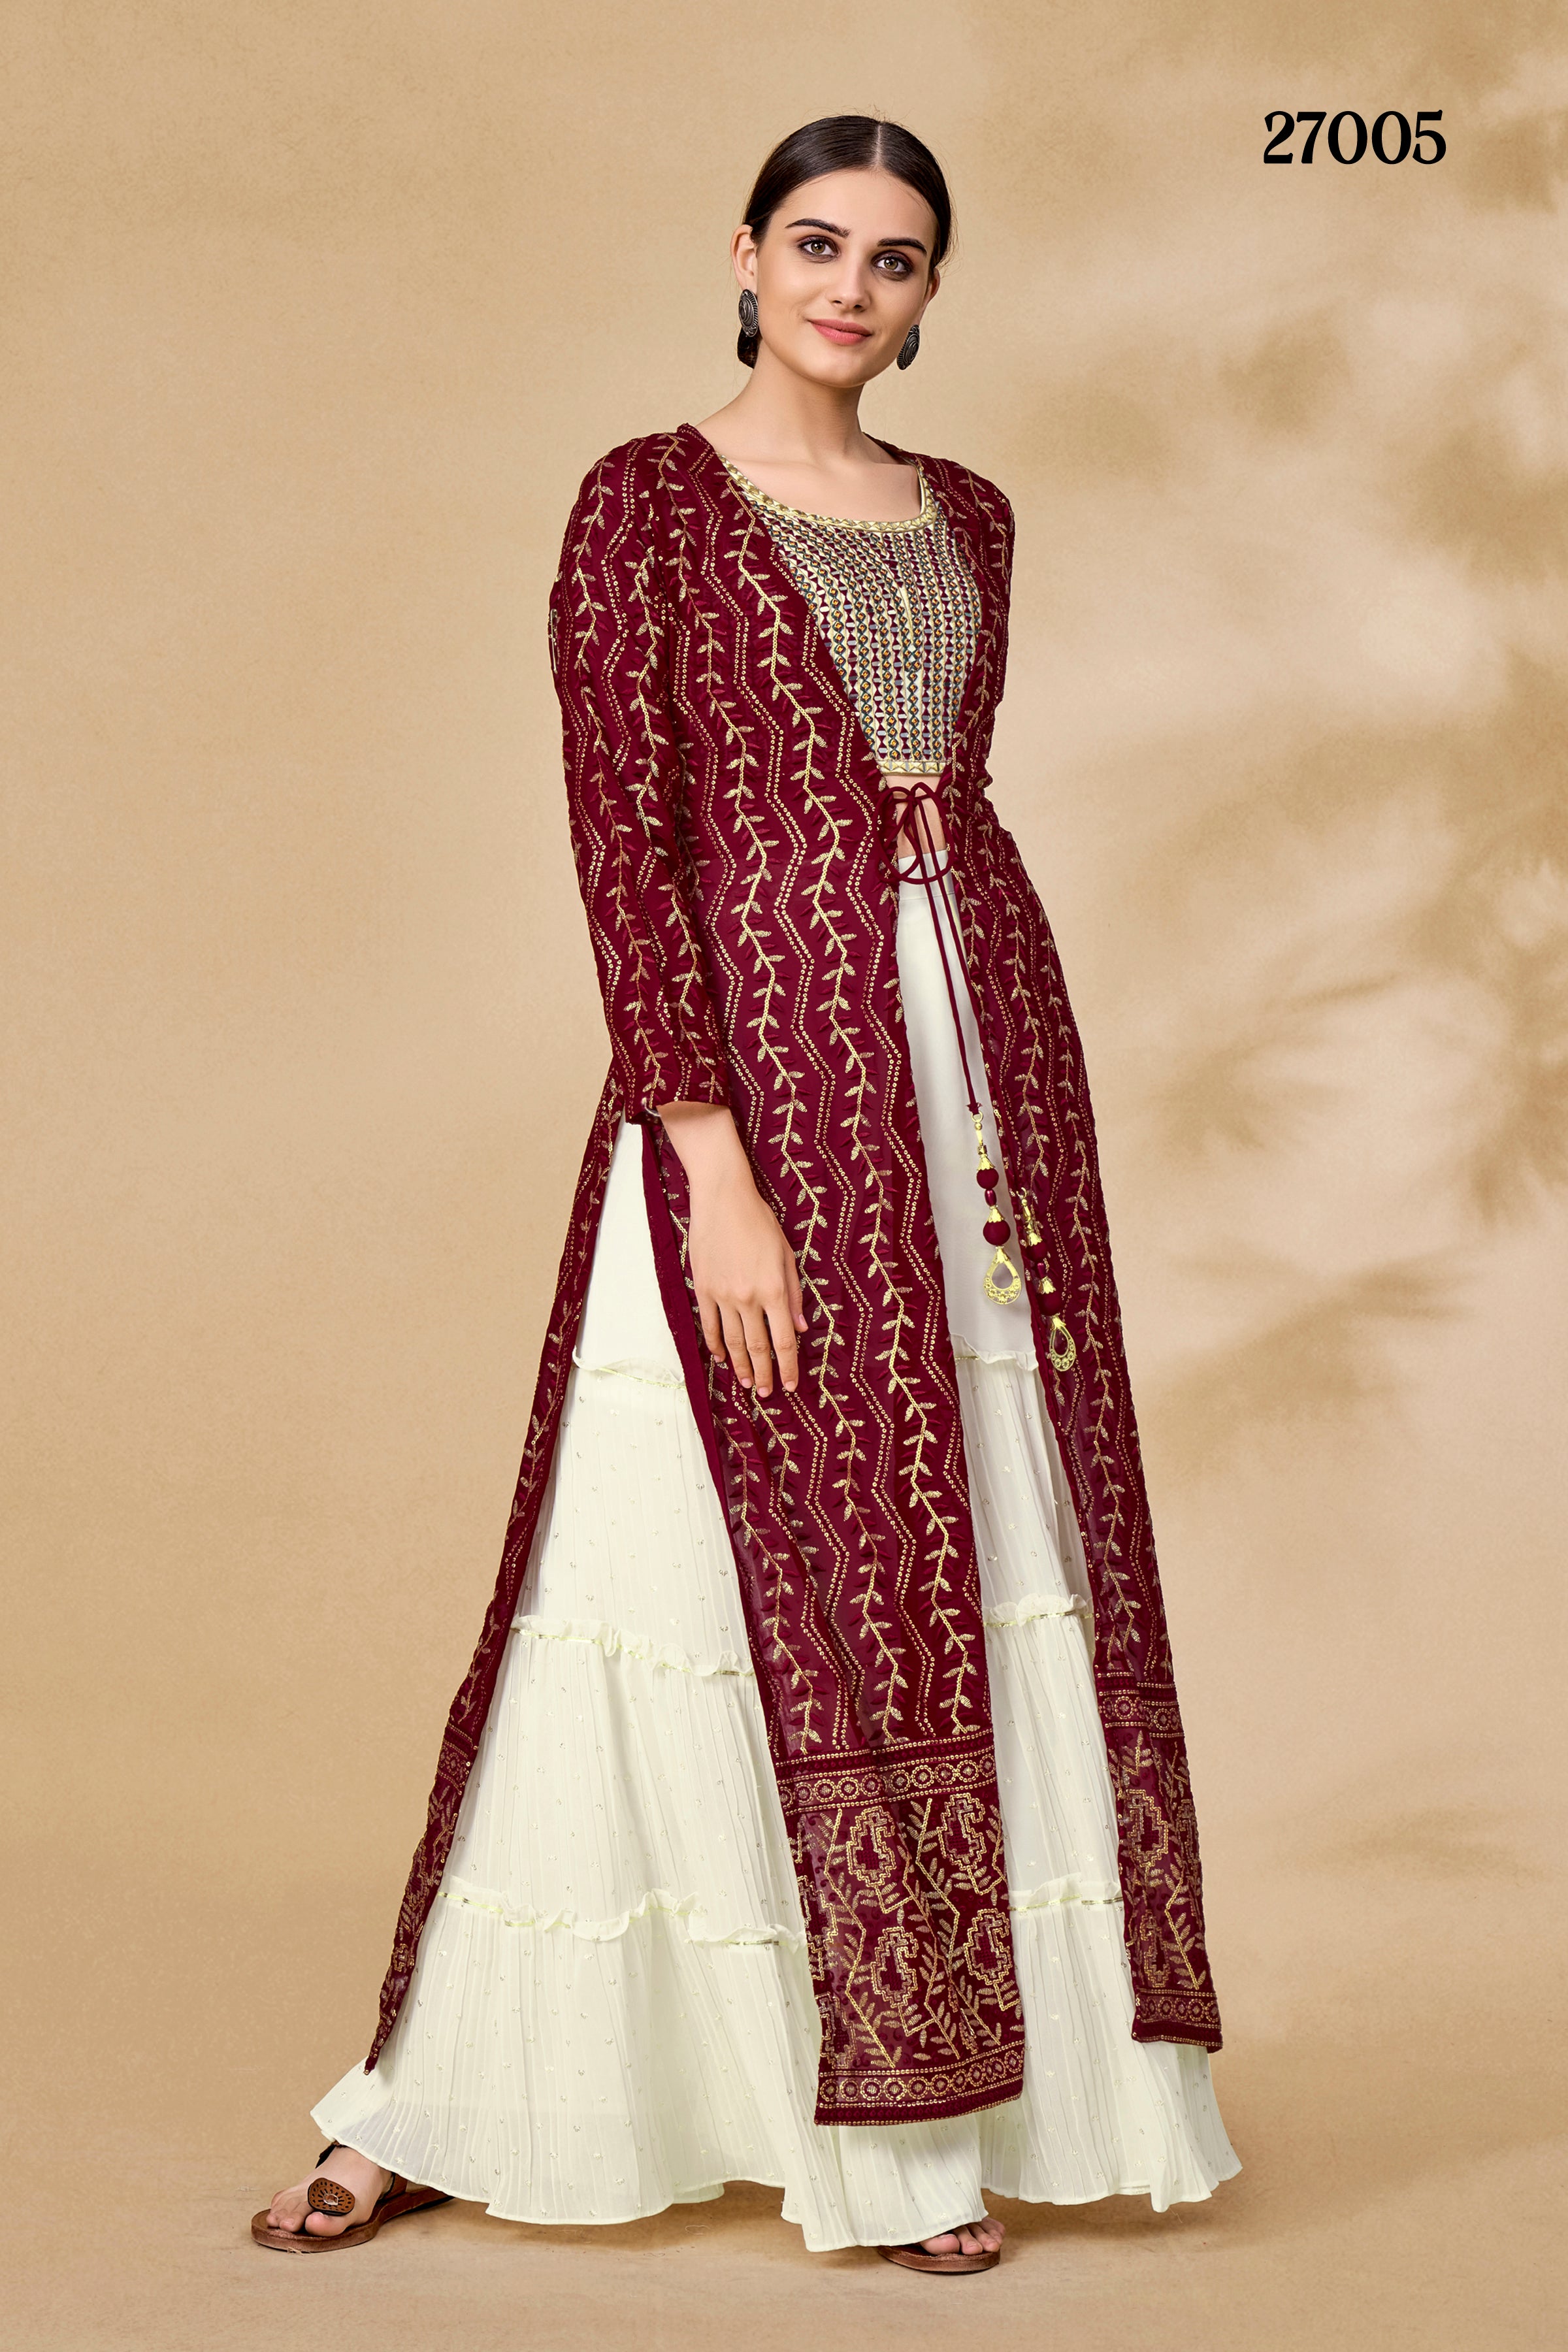 Banarasi Suit Designs ll Party Wear Banarasi Silk Suit Designs #trending  #fashion #banarasisuit - YouTube